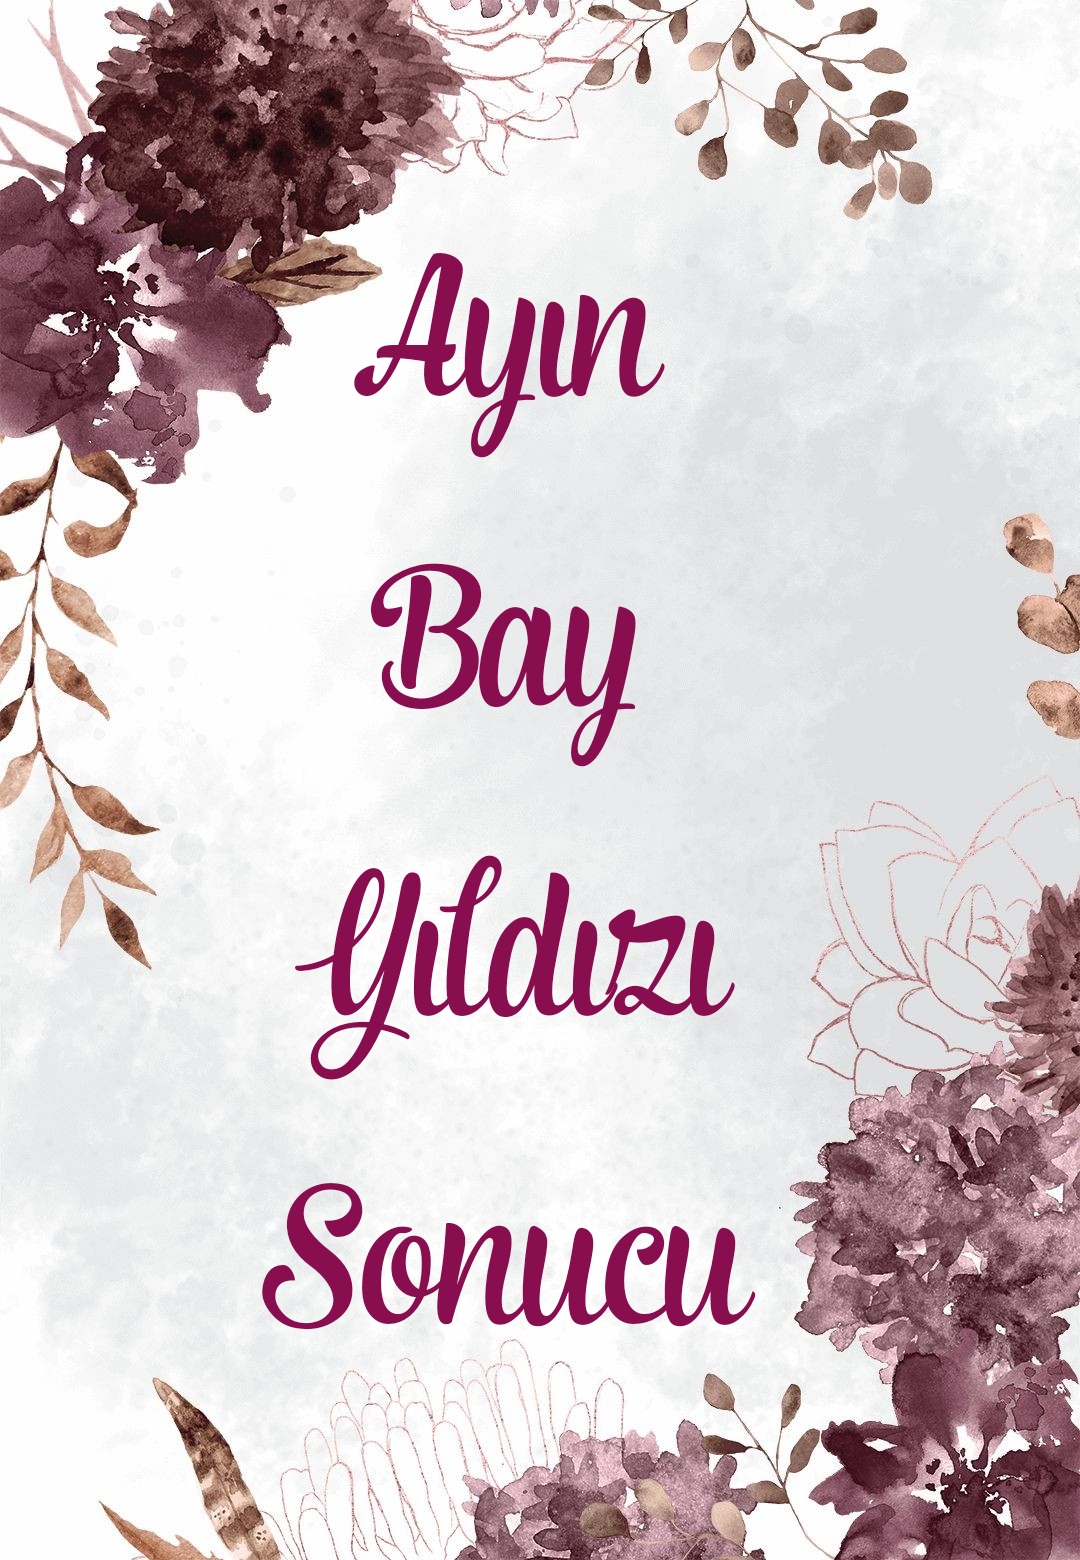 IR-Ayin Bay Yldz Sonucu-ARALIK-2021